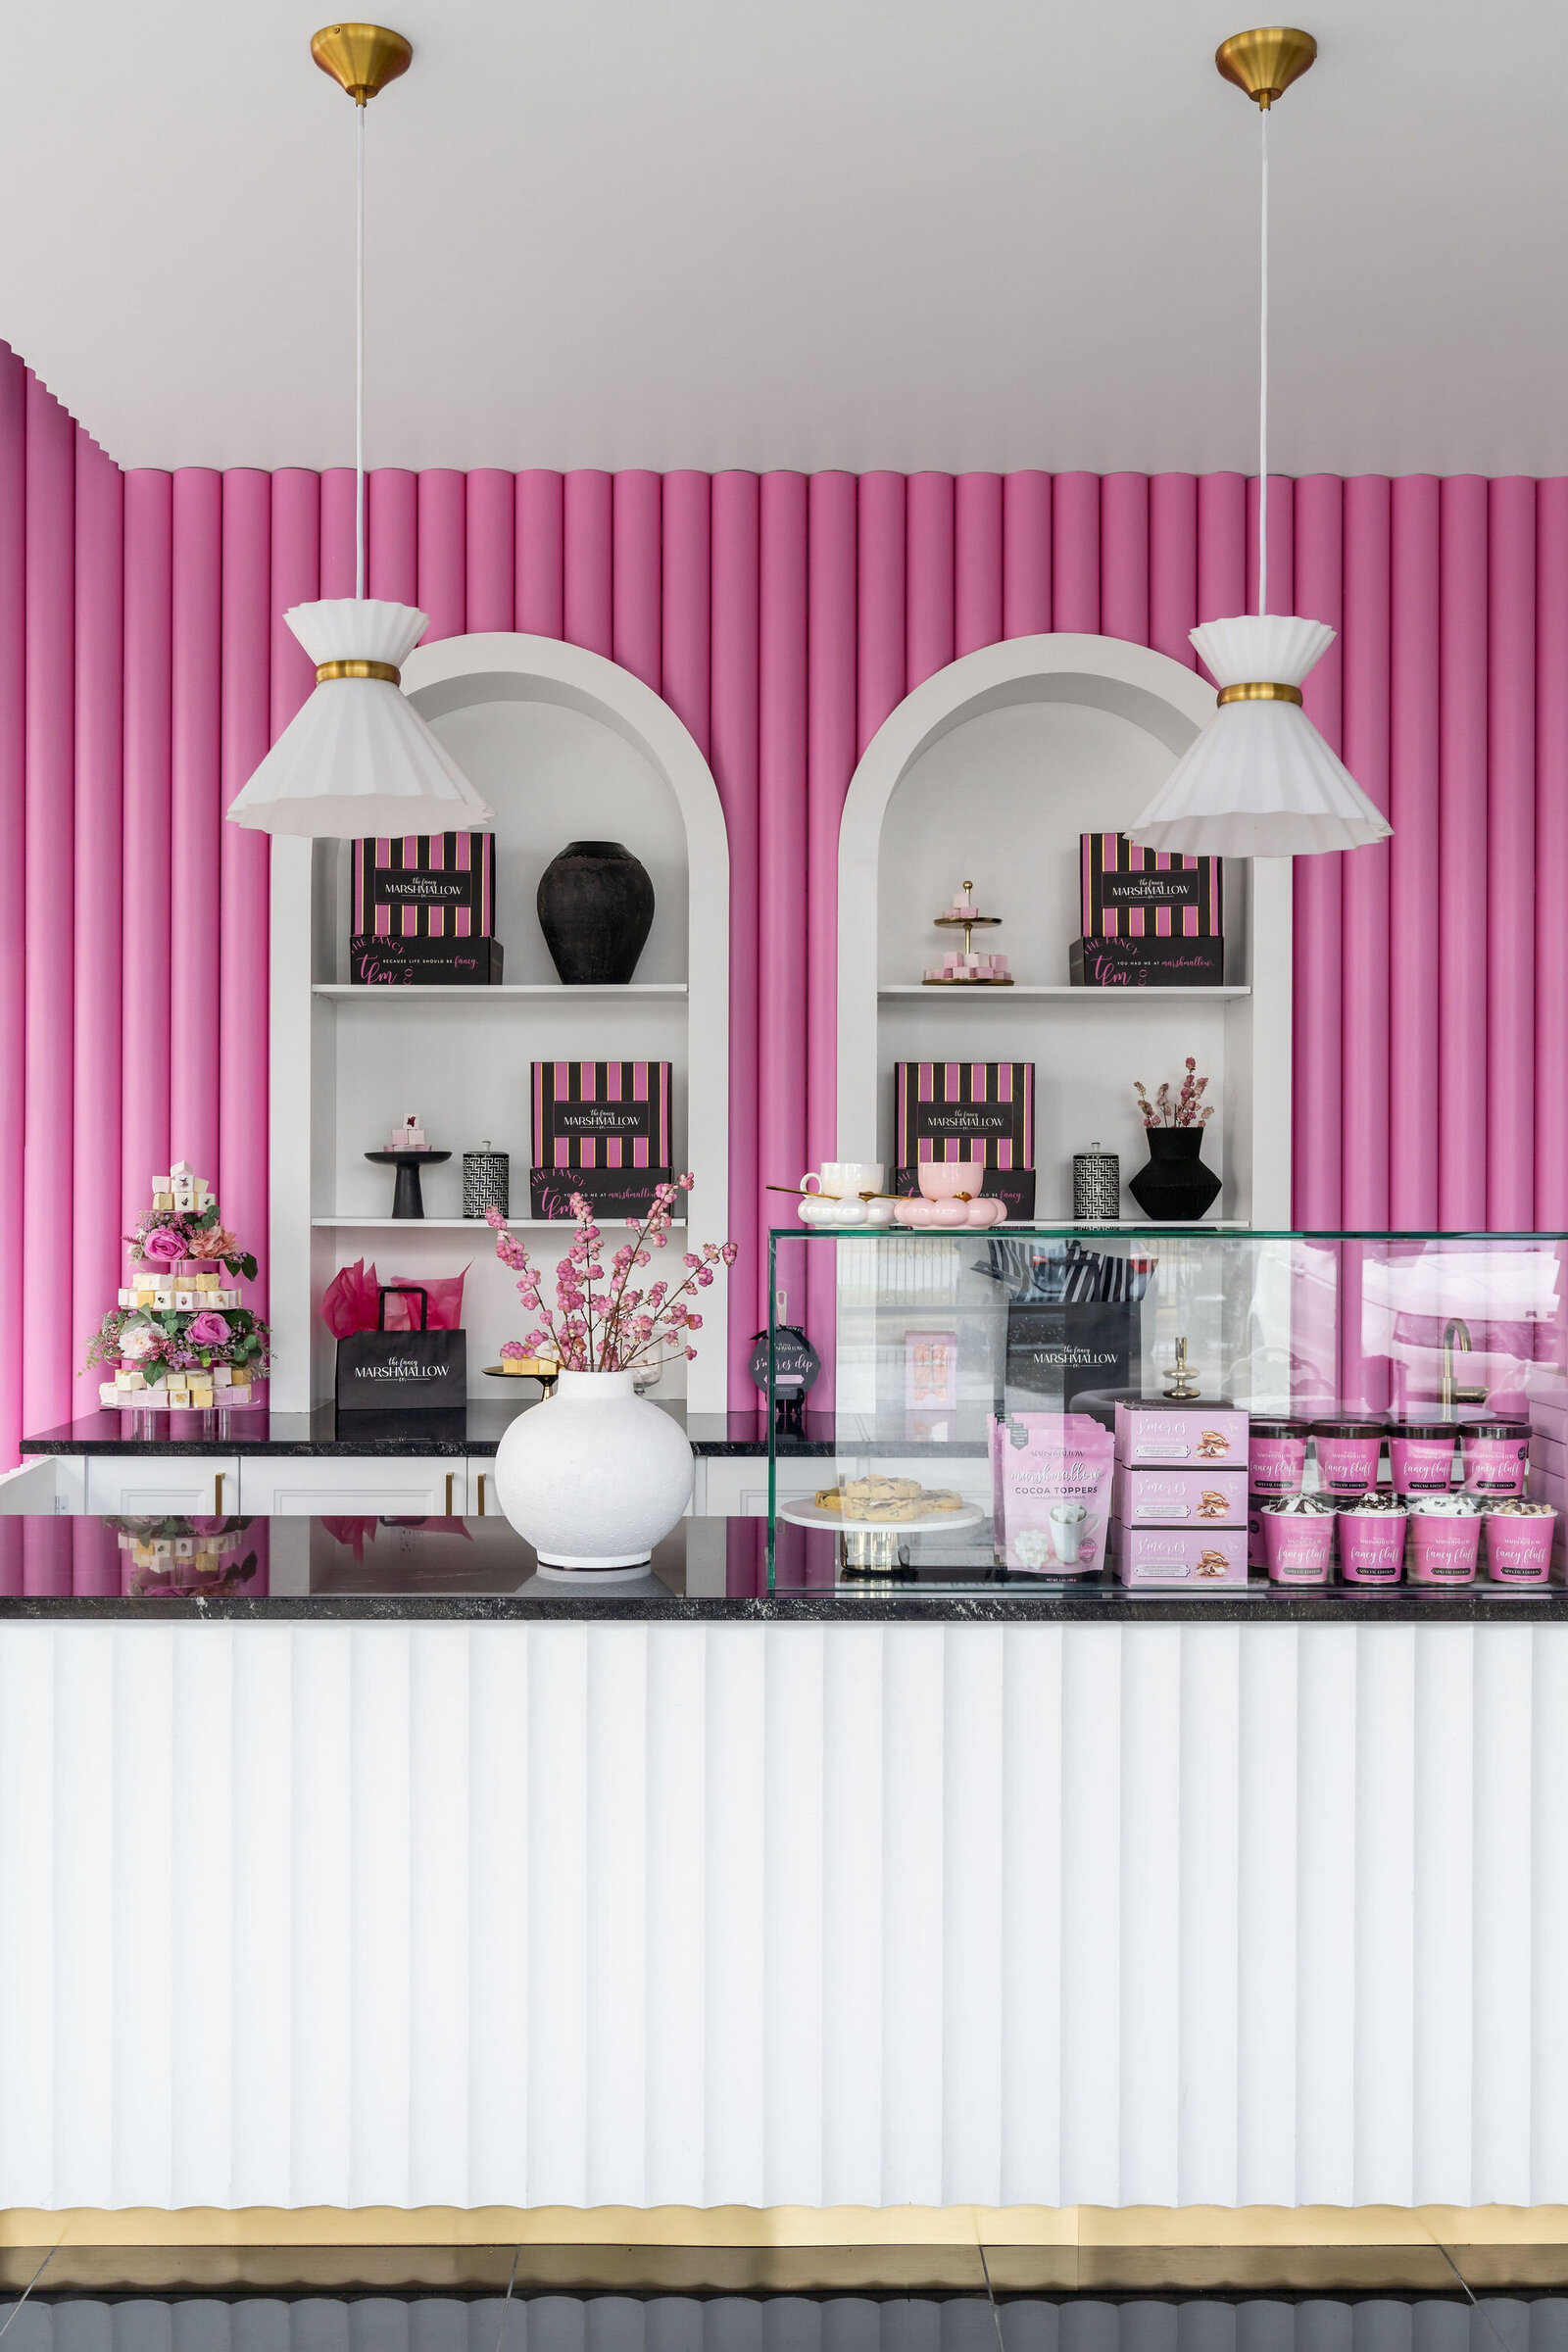 Nuela_Designs_Pink_White_Retail_Design